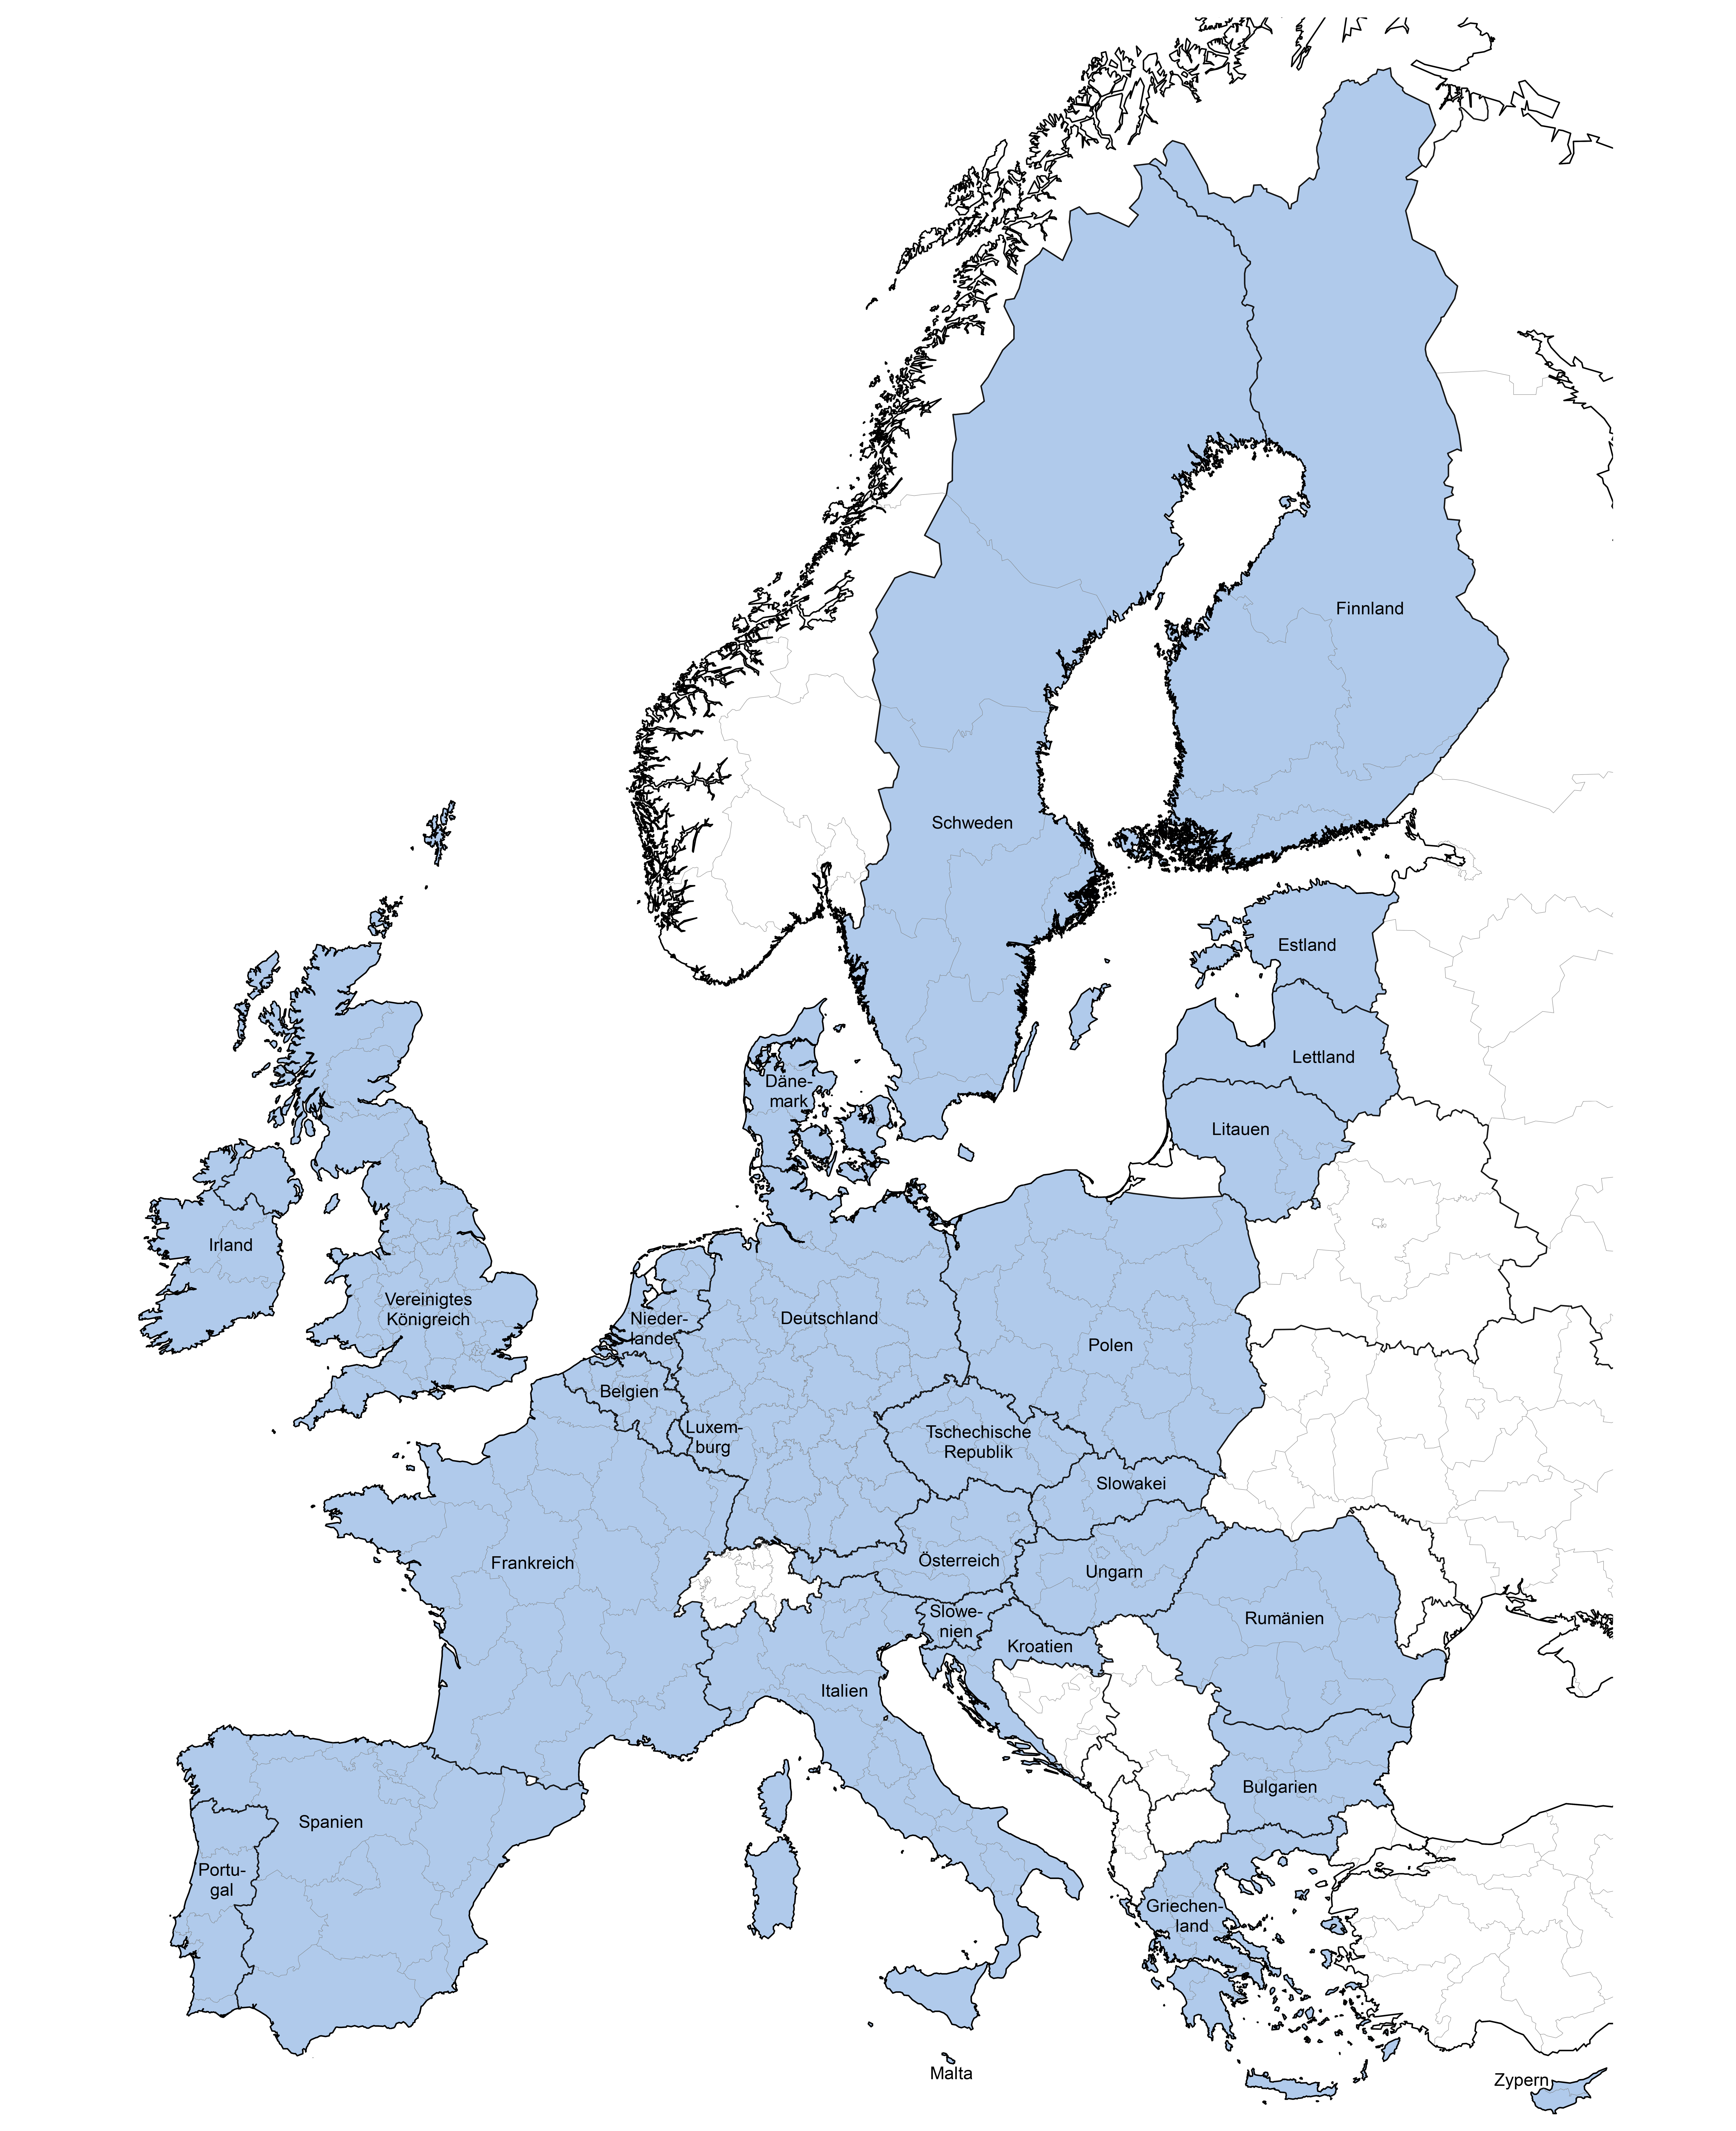 Landkarte von Europa, die NUTS-2-Gebiete und das vereinigte Königreich sind hellblau gefärbt.